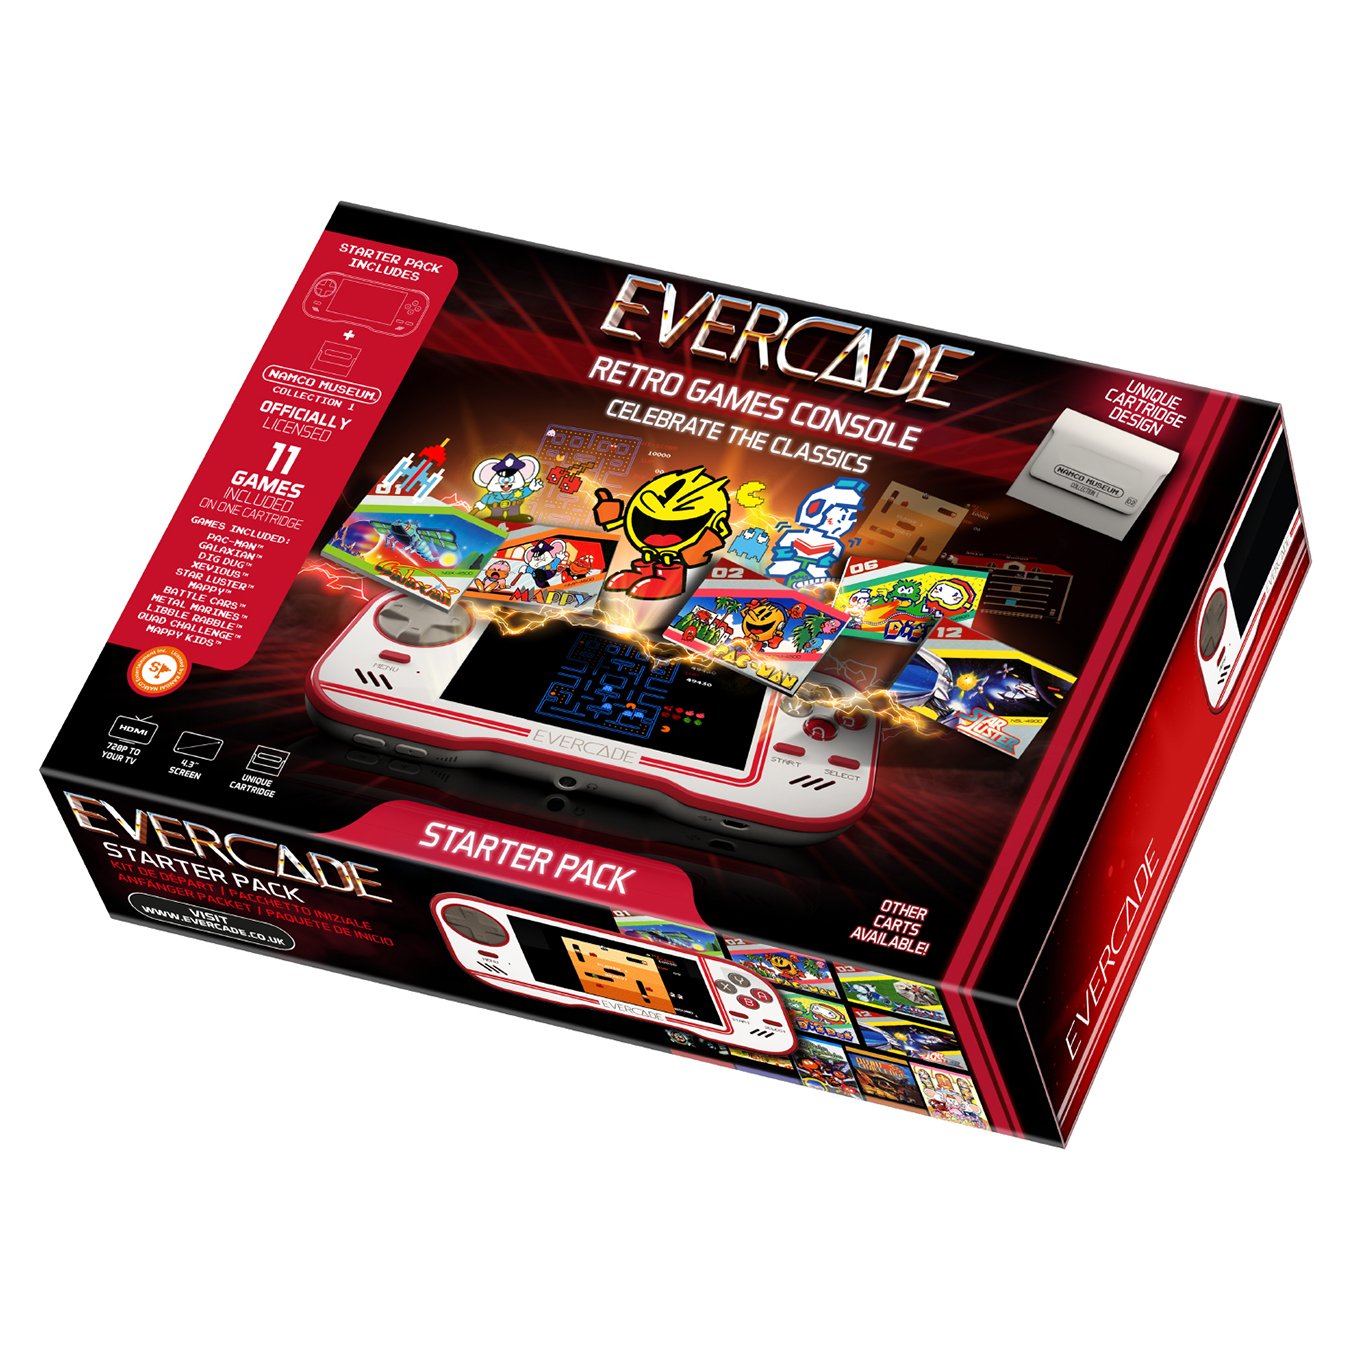 Blaze Evercade Retro Handheld Console Starter Pack Review